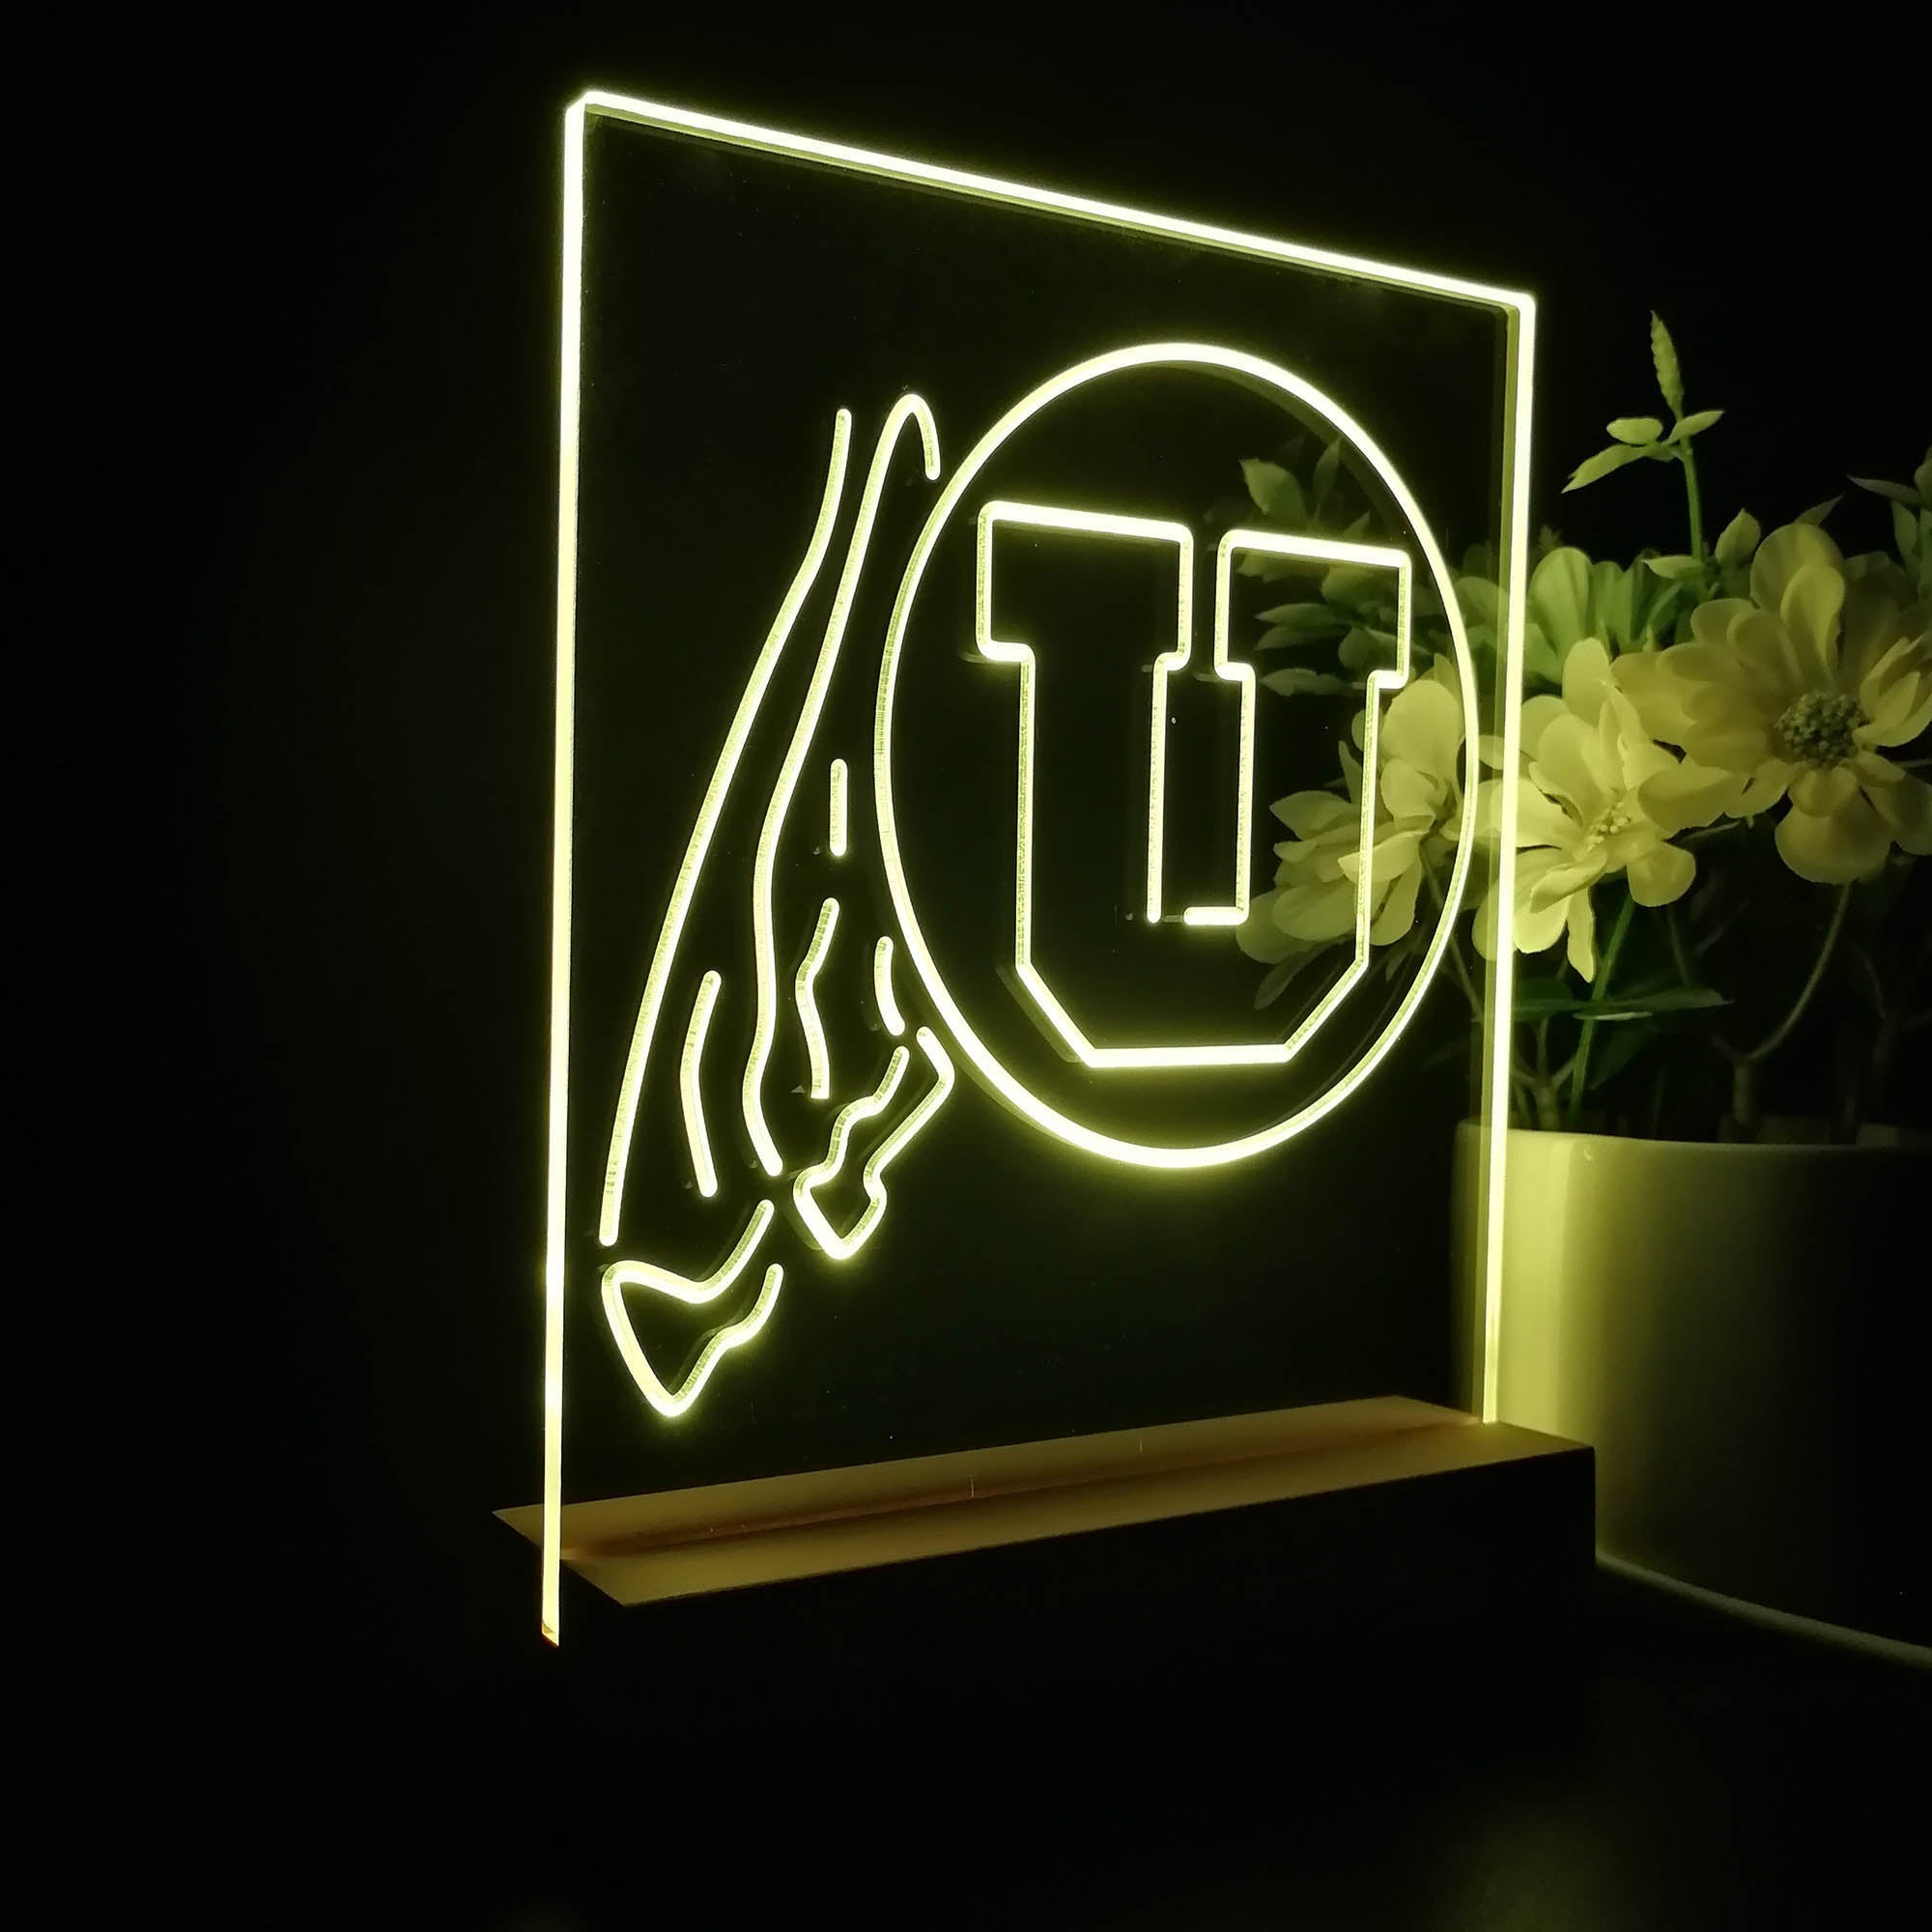 Utah Utes 3D Illusion Night Light Desk Lamp